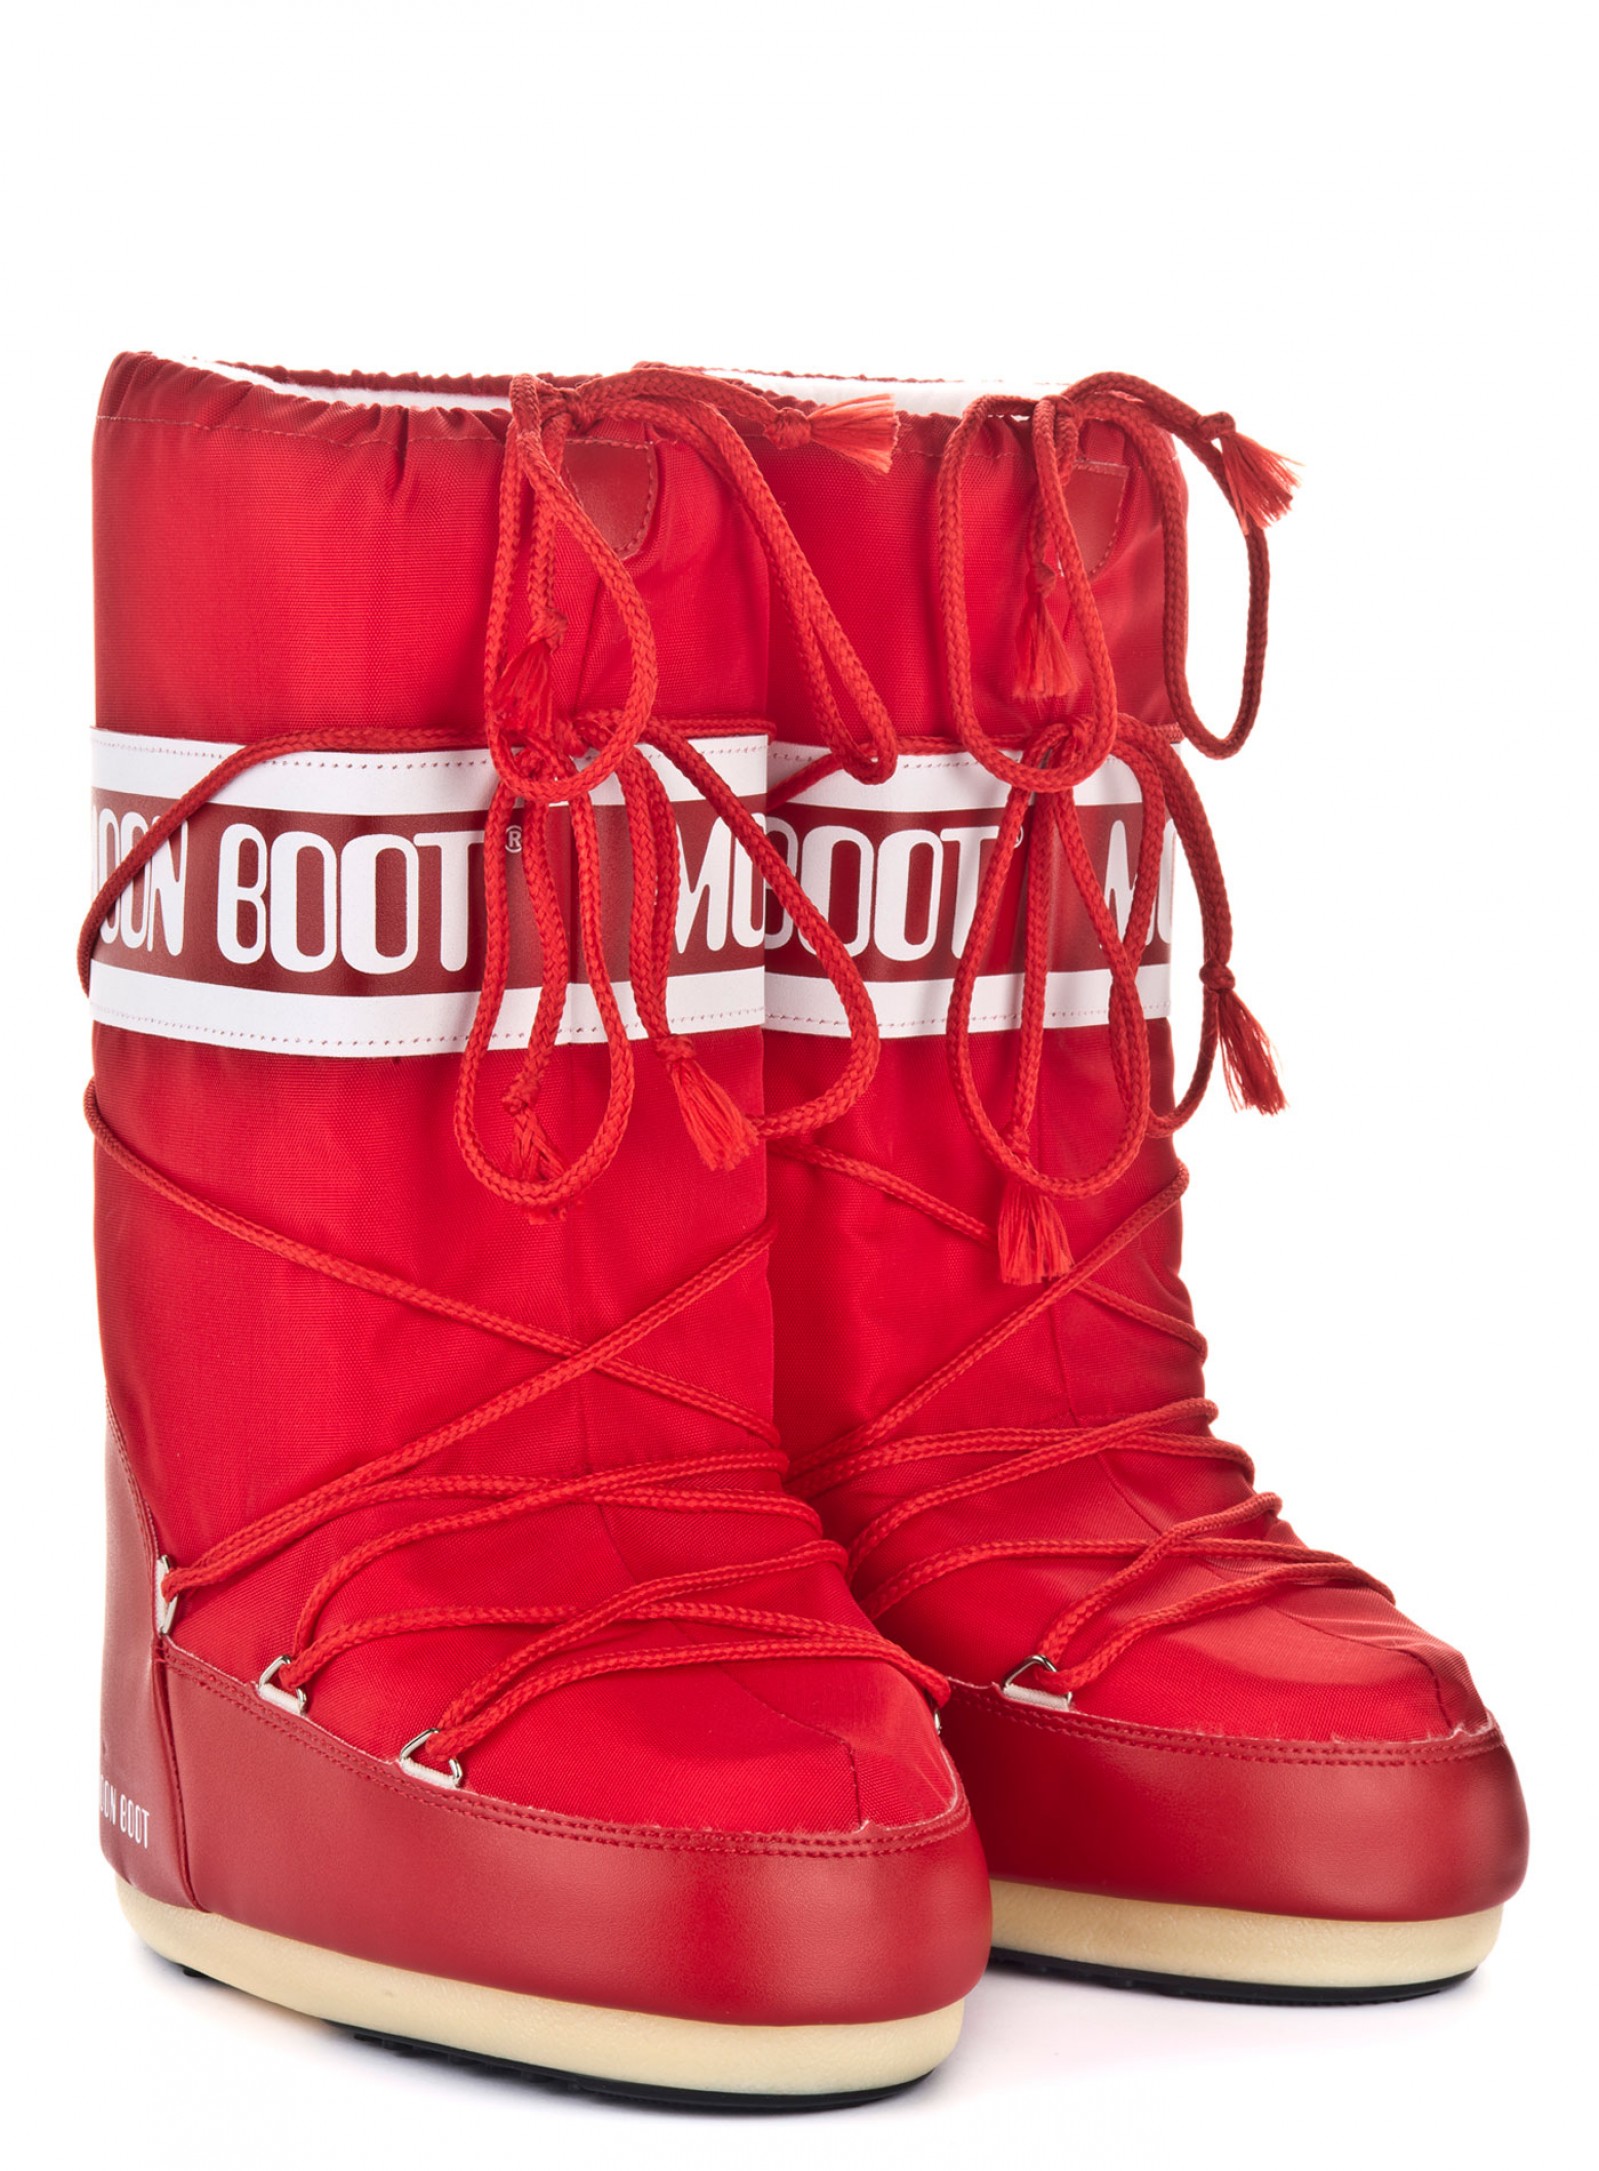 Мунбуты Tecnica Moon Boot Nylon red